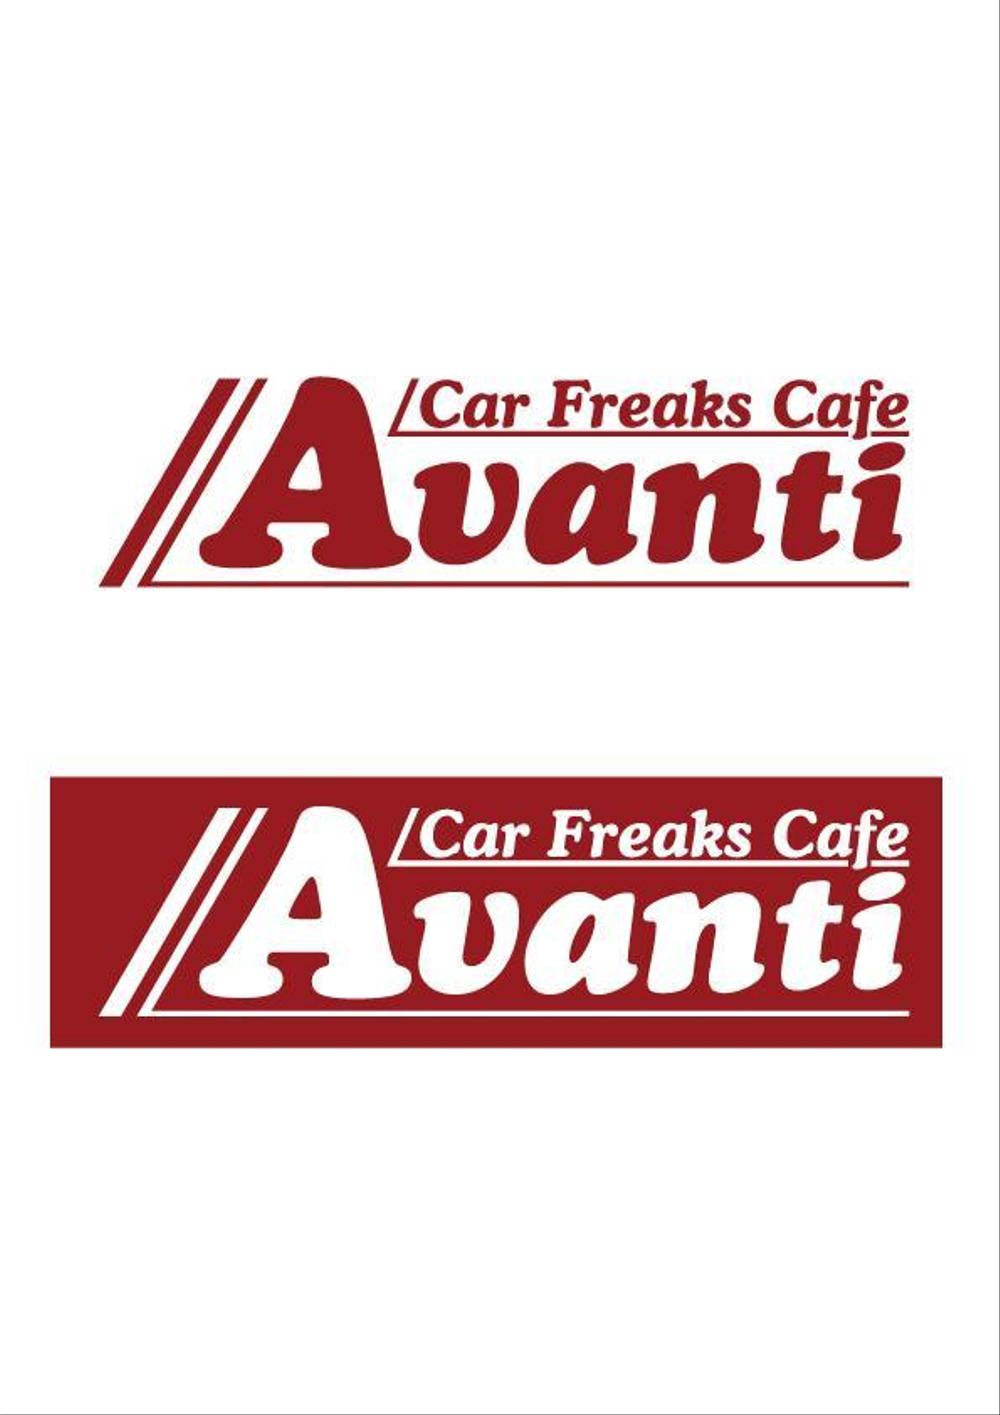 クルマ好きの集まるカフェのロゴ